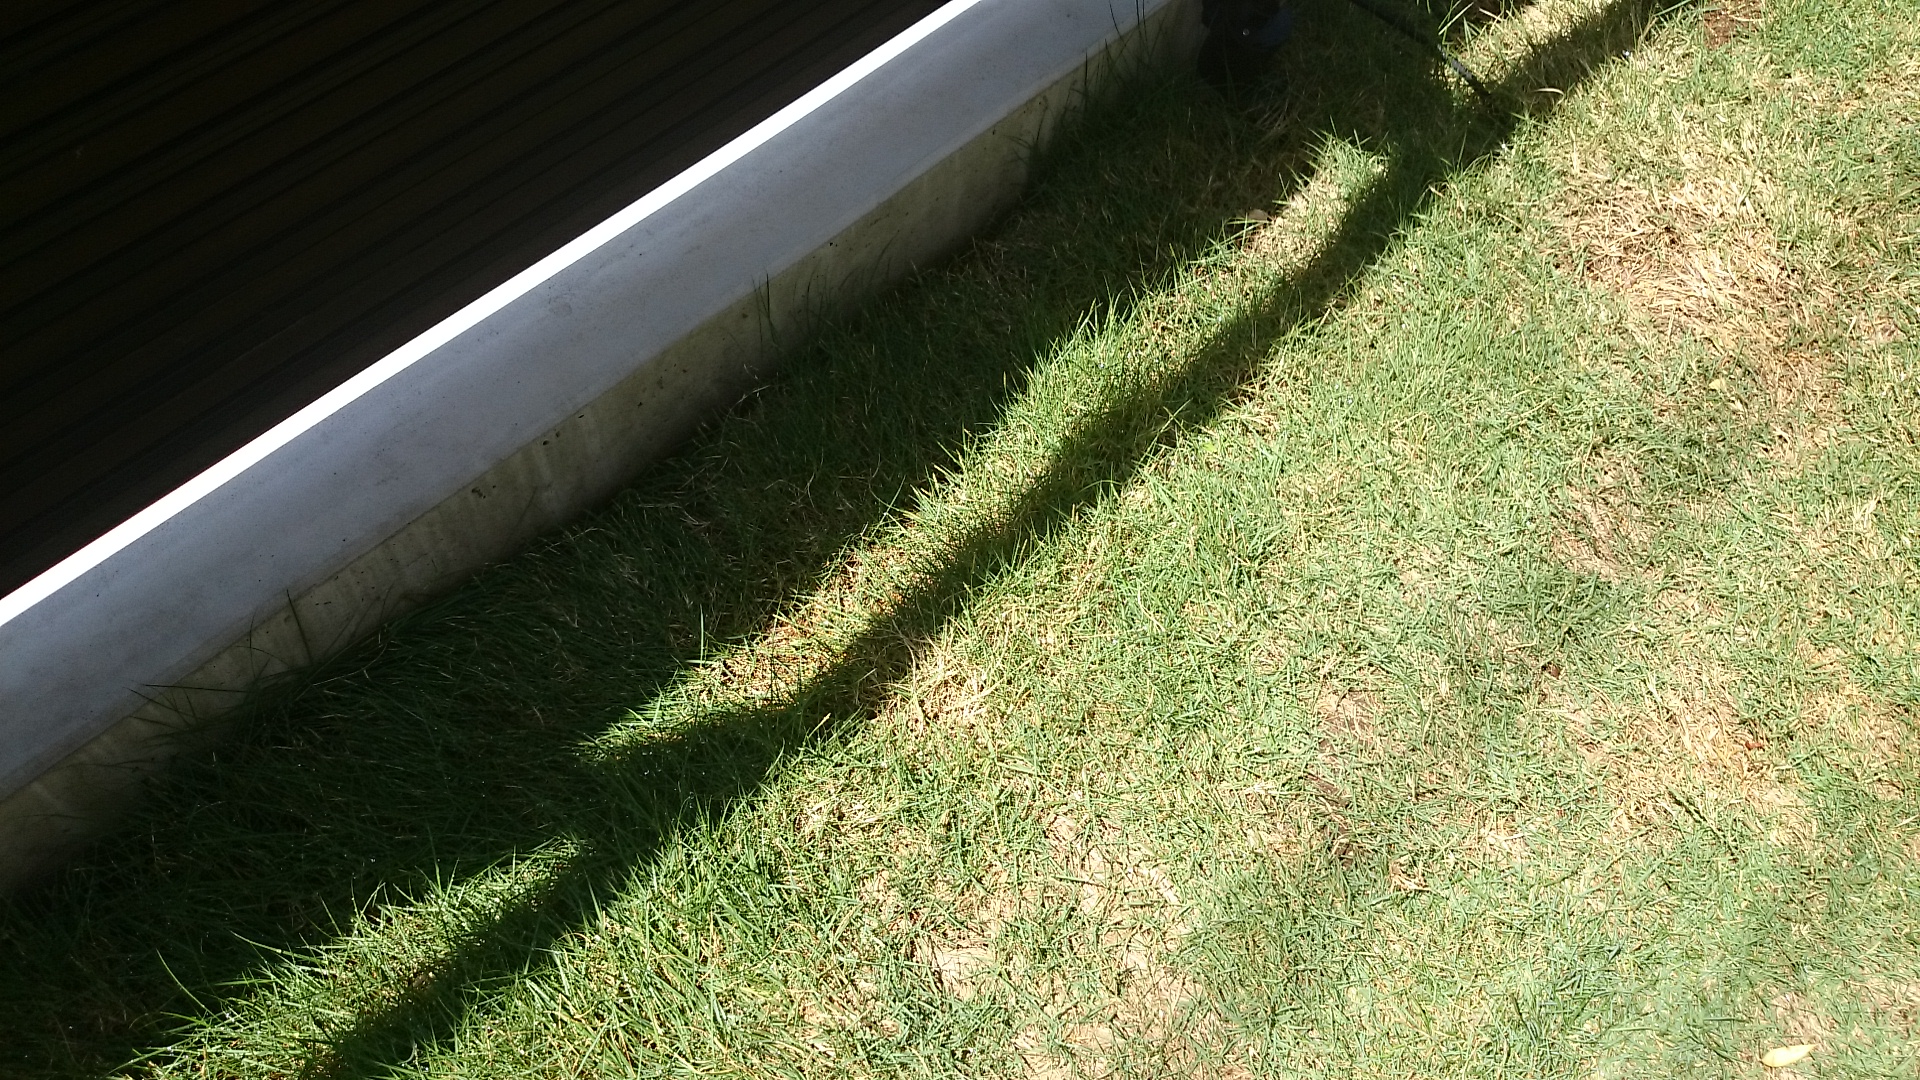 Diyガーデニング 知らなかった芝のお手入れ方法と2年目の芝生の様子 初めての芝張り Smart House Cool Life